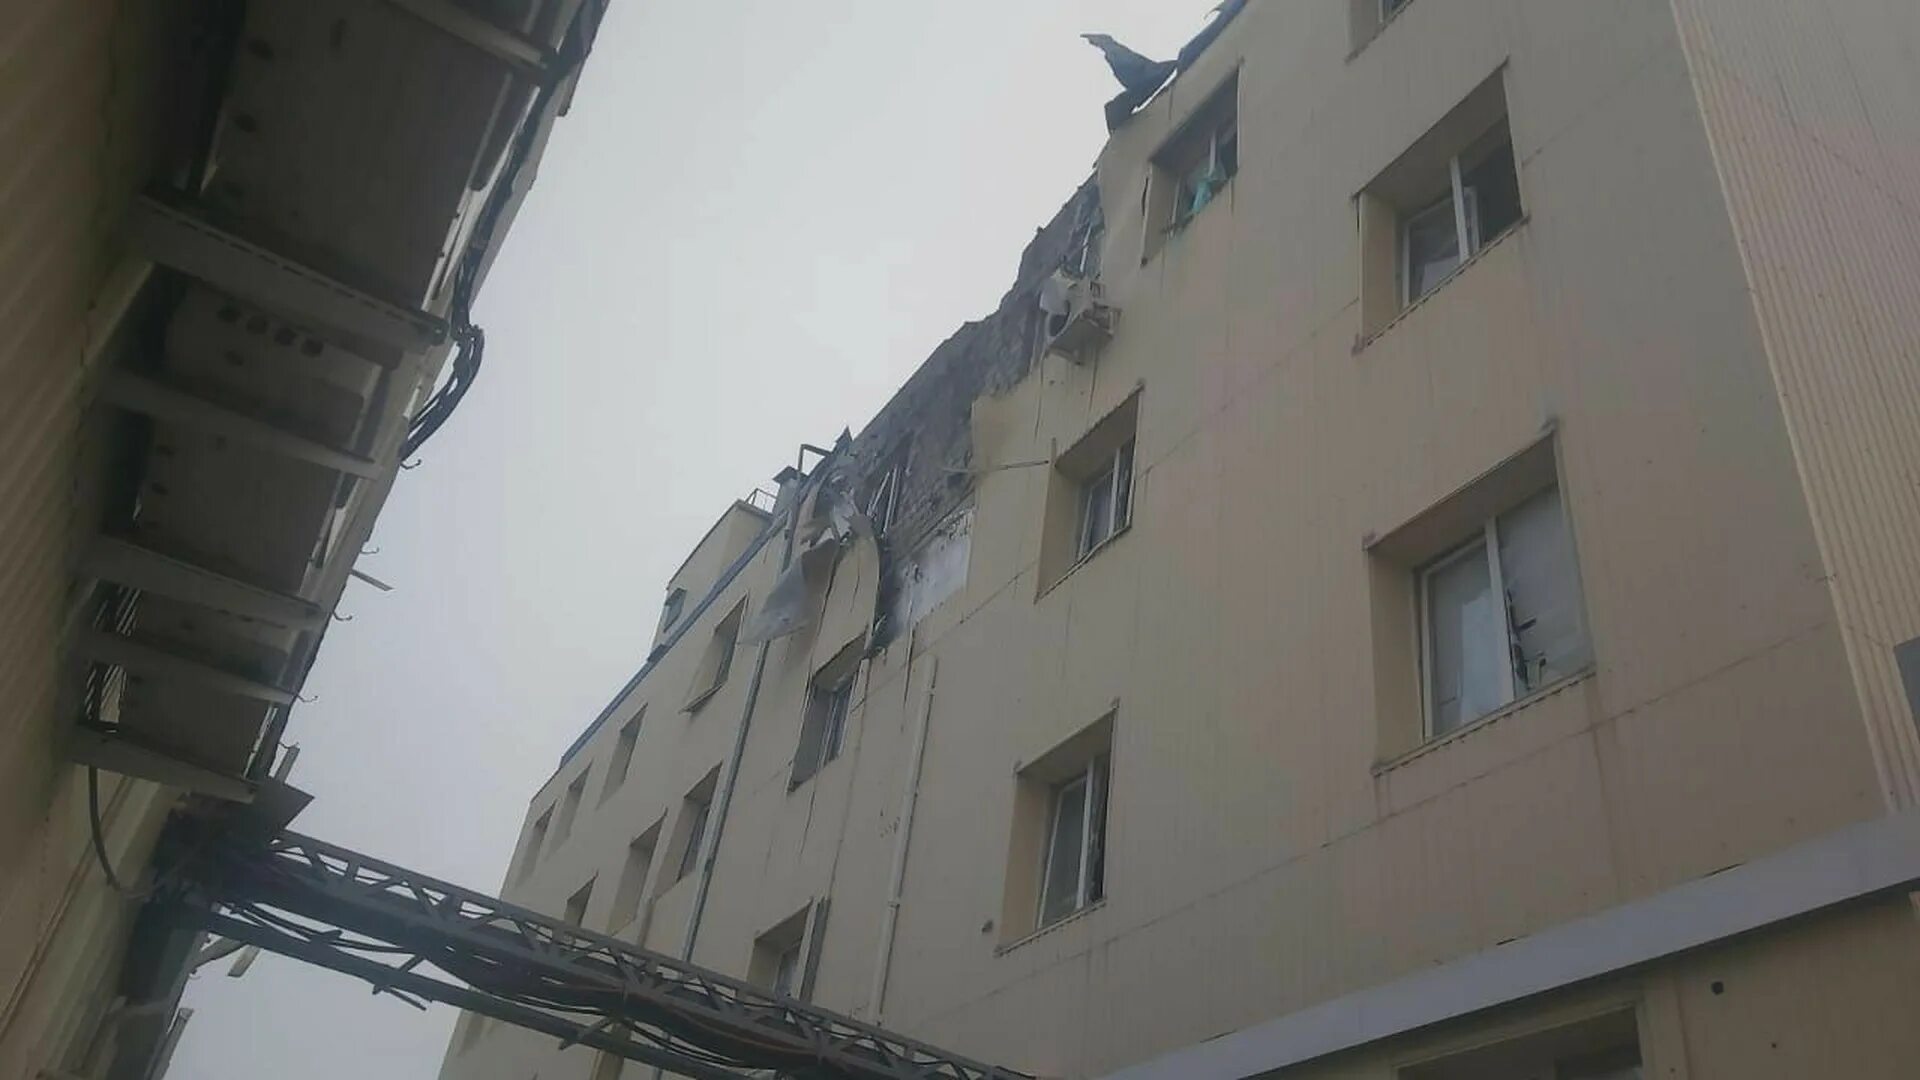 Дом упал. Пожар в административном здании. Пятиэтажка фото. Новости краснодарского края взрыв